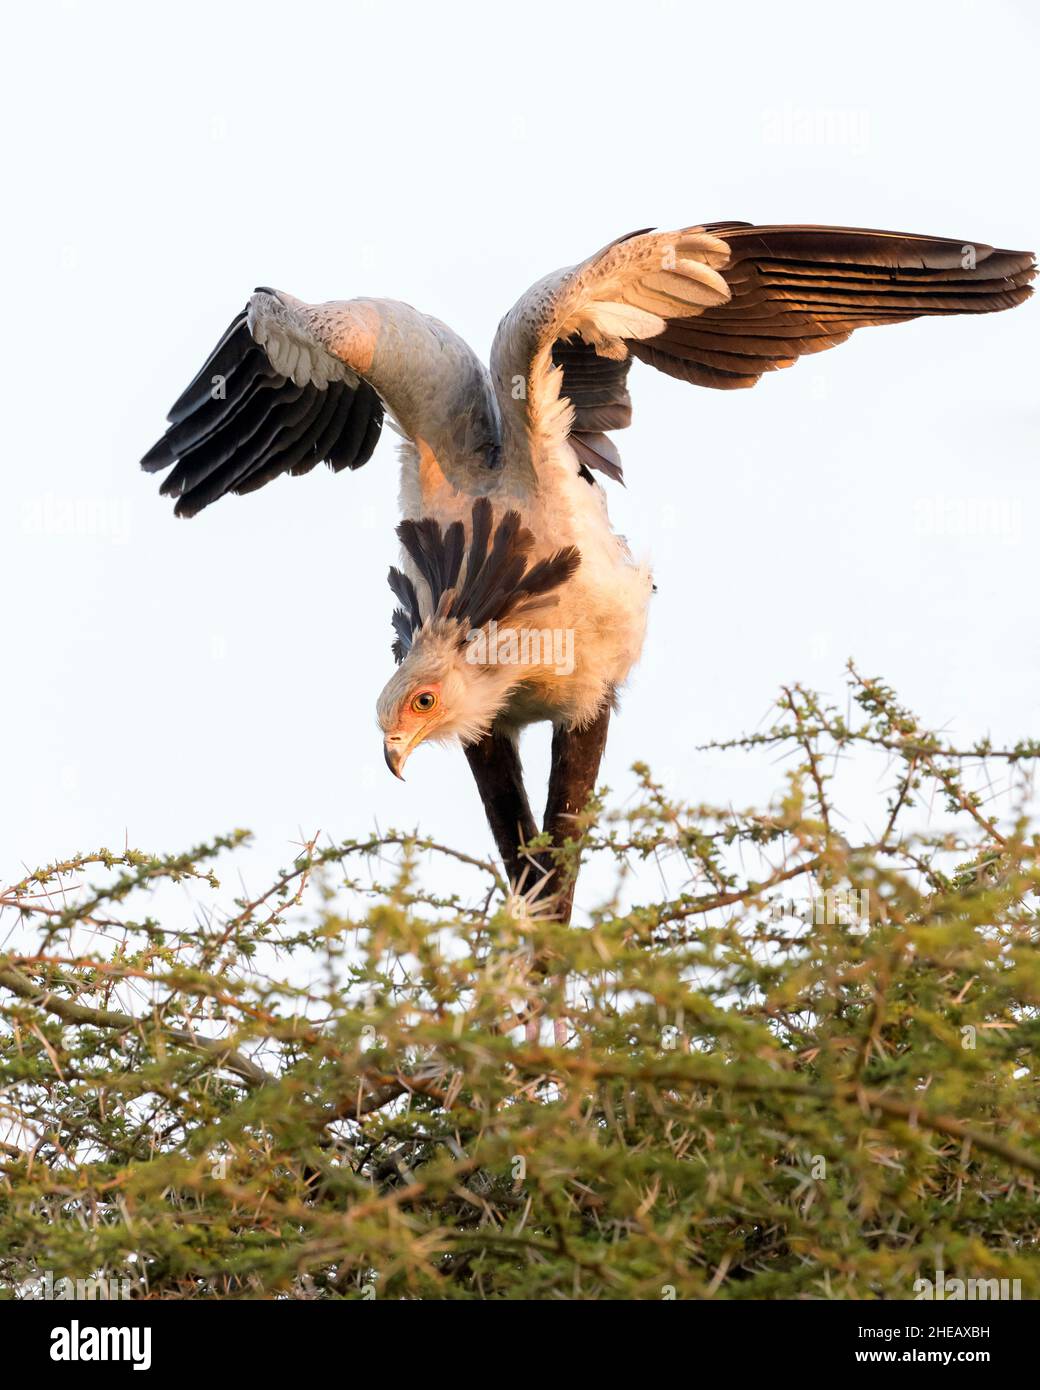 Sekretariatsvögel (Schütze serpentarius), die auf dem Nest auf der Akazienspitze stehen und mit Flügeln flattern, Ngorongoro-Schutzgebiet, Tansania, Afrika. Stockfoto